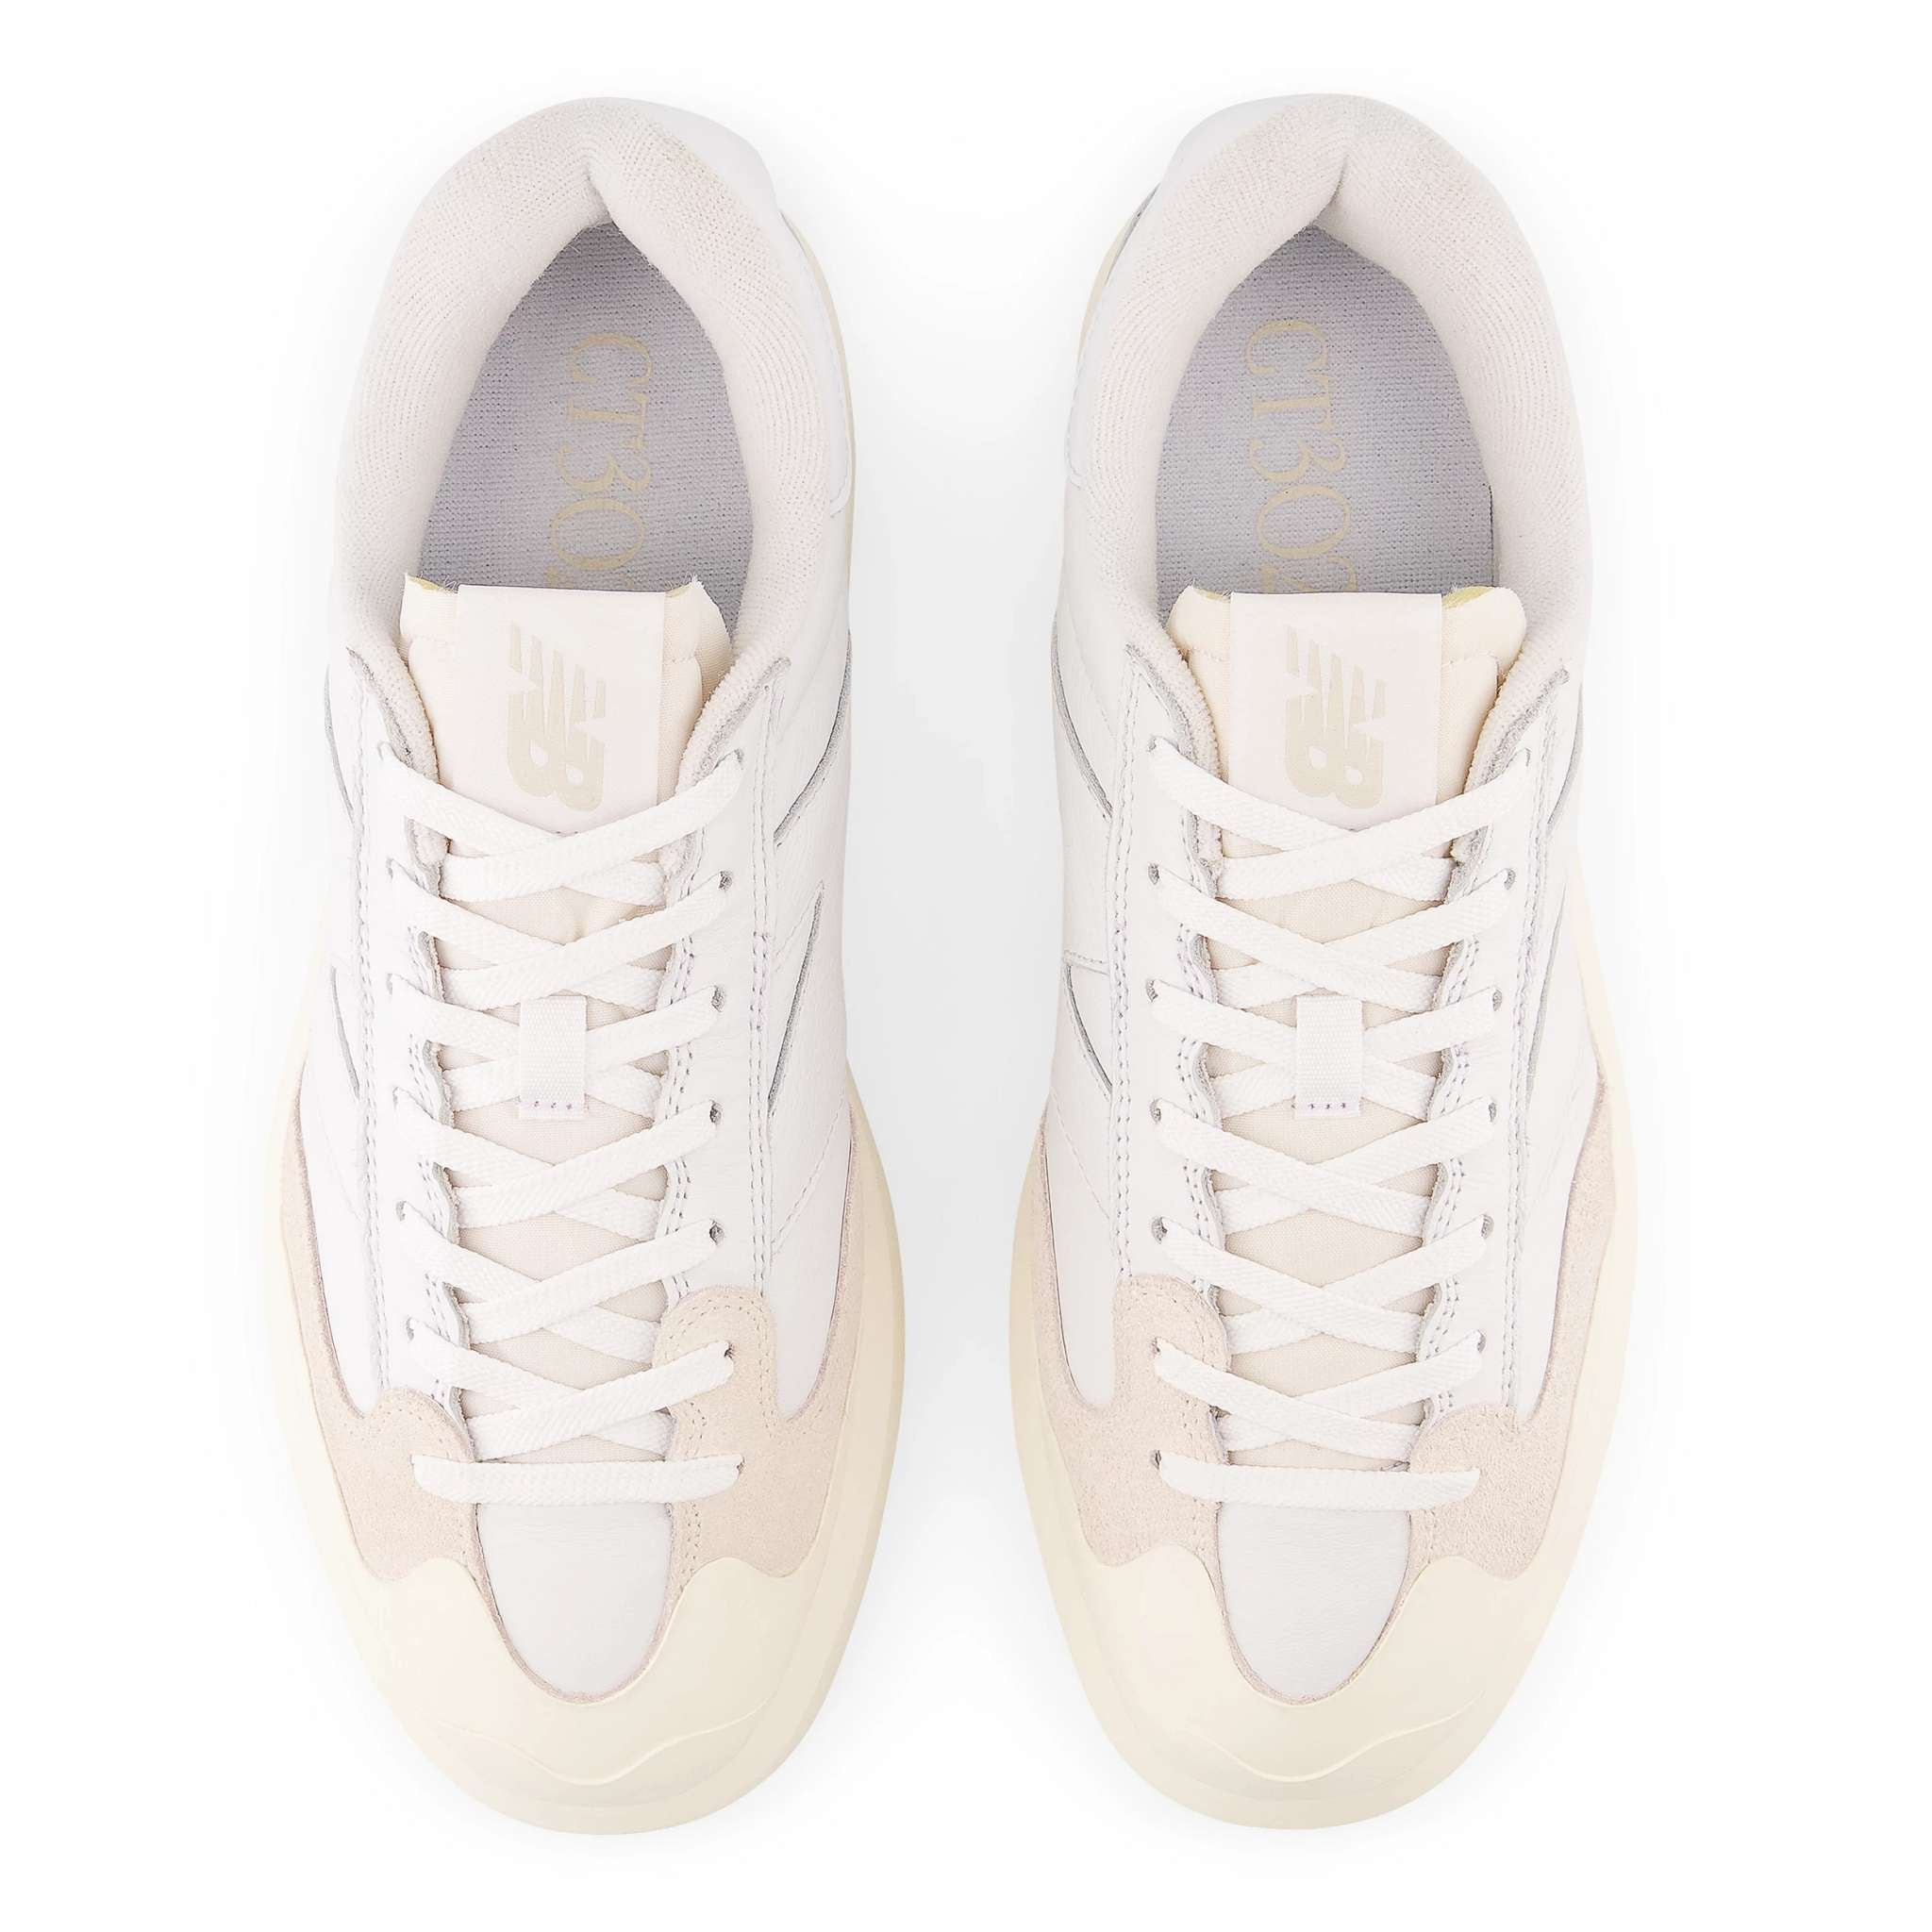 Sneaker NEW BALANCE CT302OB - White/Moonbean